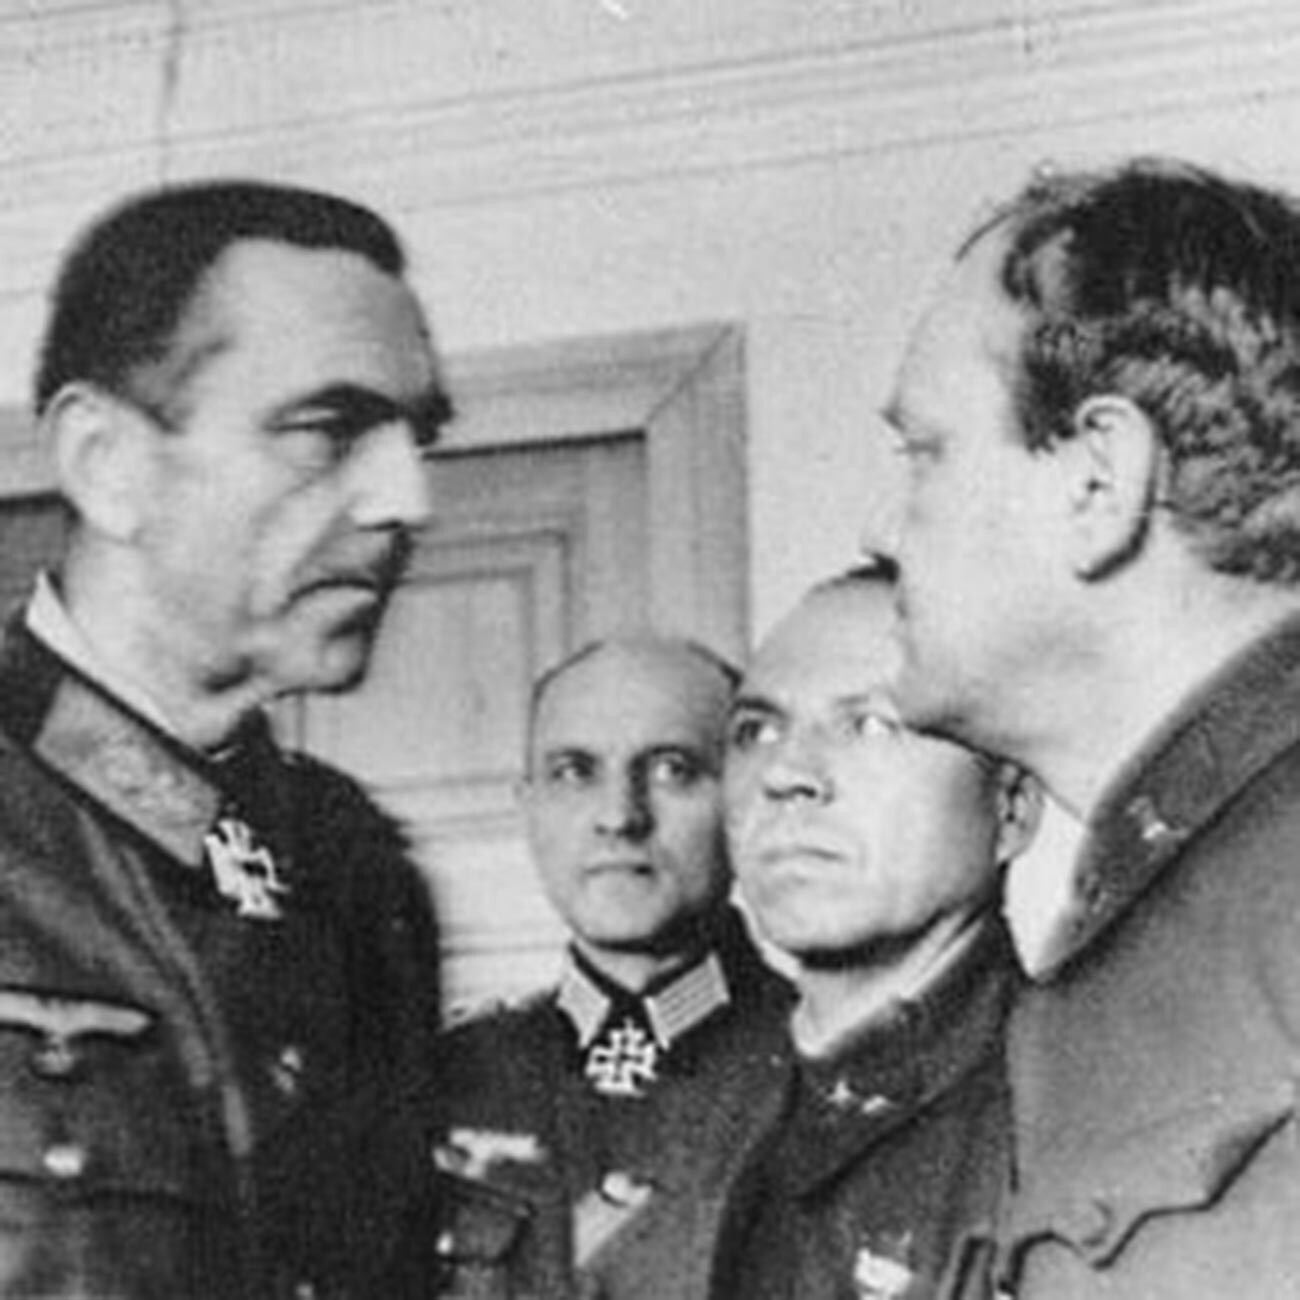 In der Mitte des Bildes, zwischen Paulus und Generalmajor Iwan Laskin, Stabschef der 64. Armee, steht der persönliche Adjutant des gefangenen Feldmarschalls, Wilhelm Adam.